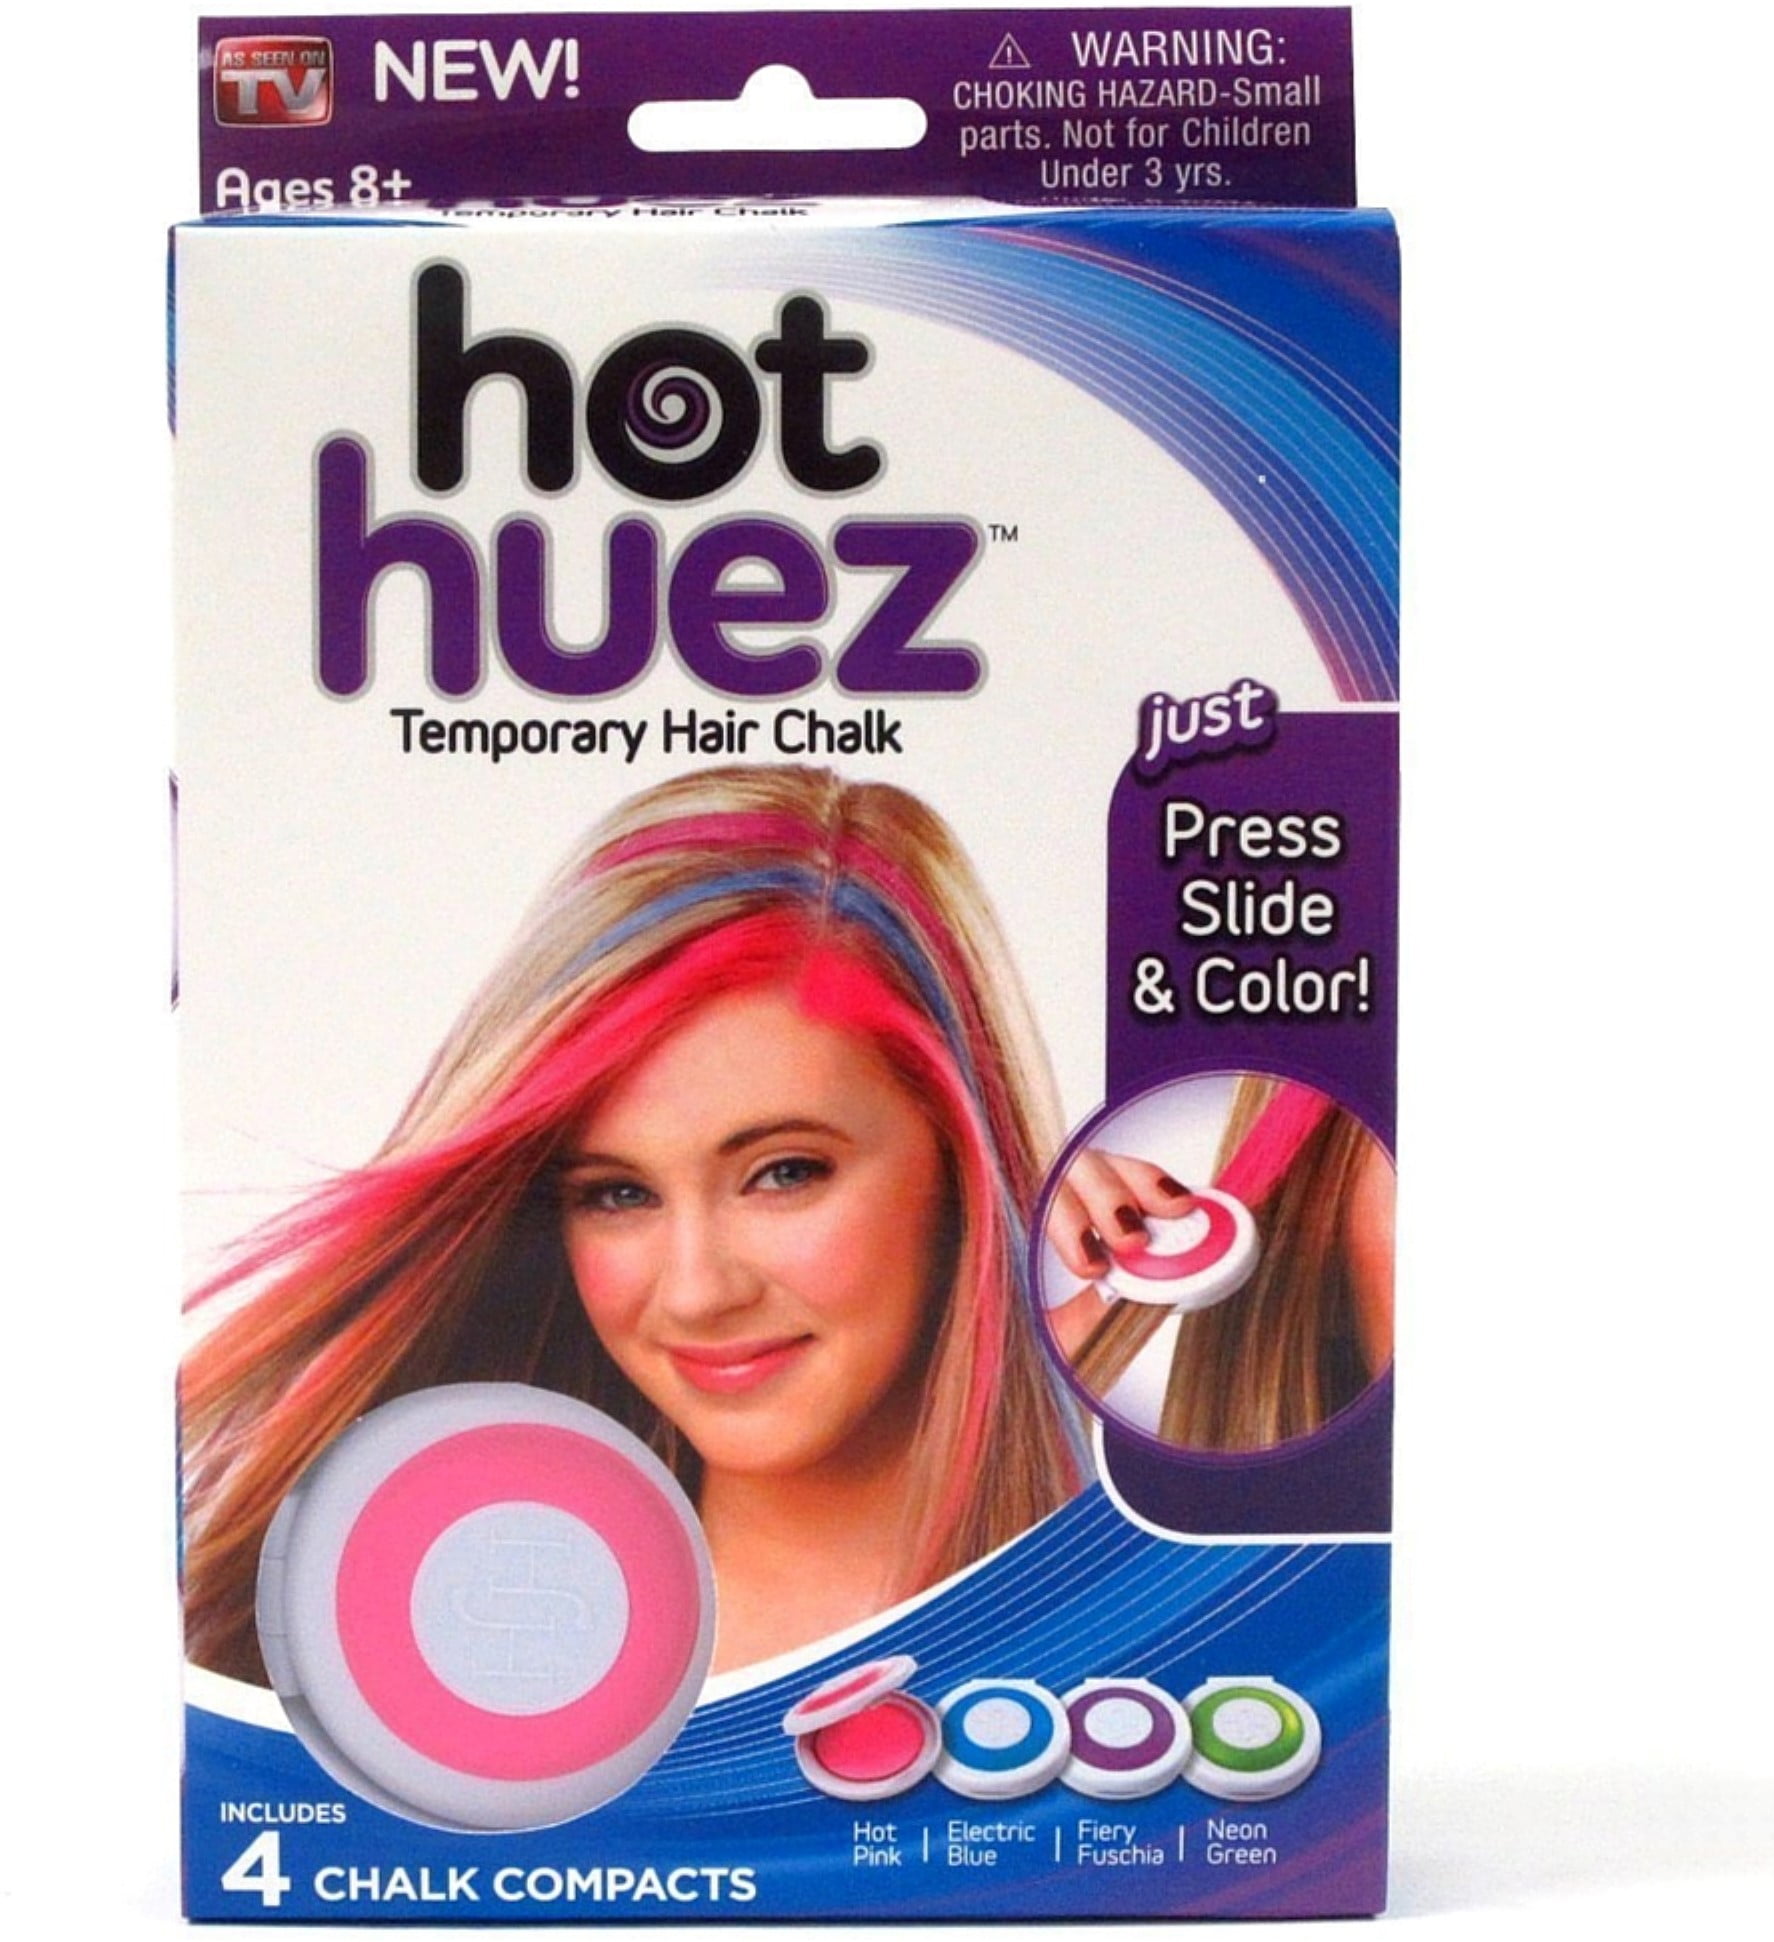 Hot Huez Temporary Hair Chalk - 4 CT! 